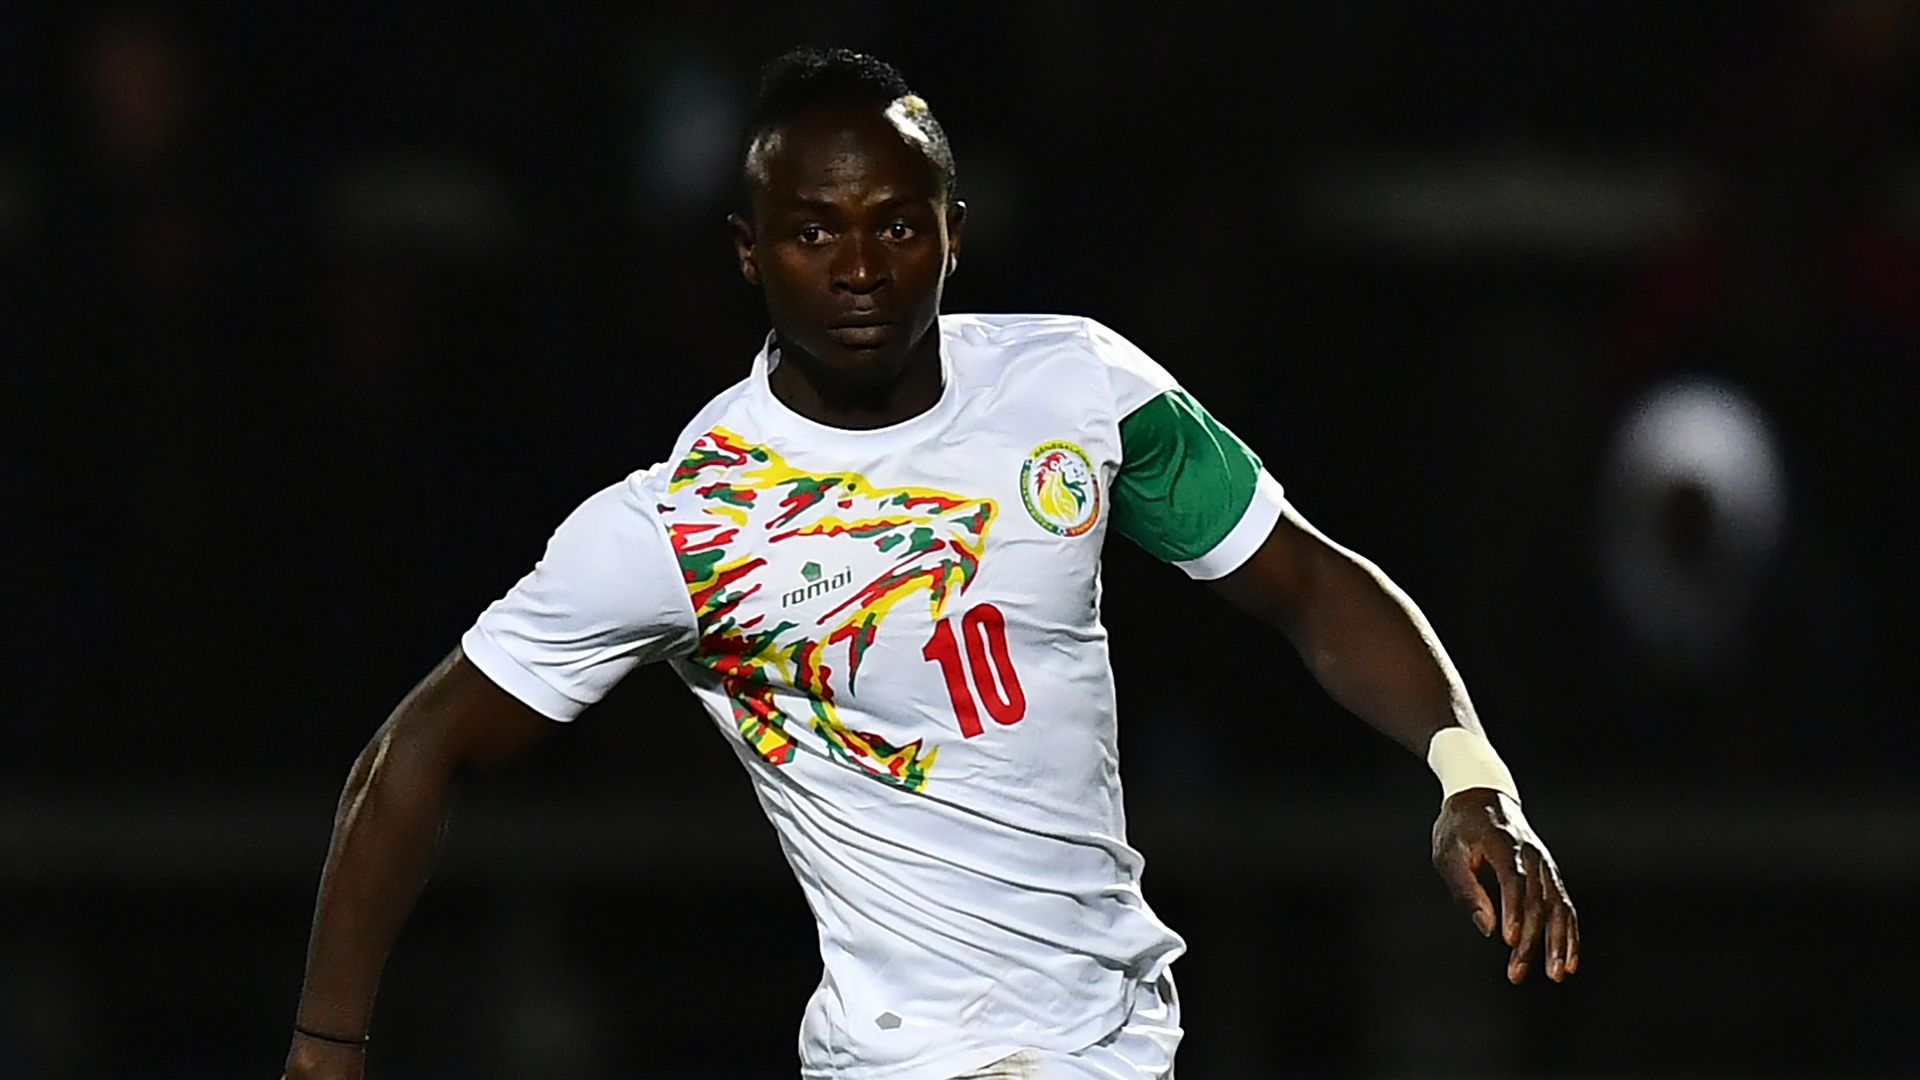 Afcon 2019: Senegal midfielder Gueye eager for Mane return